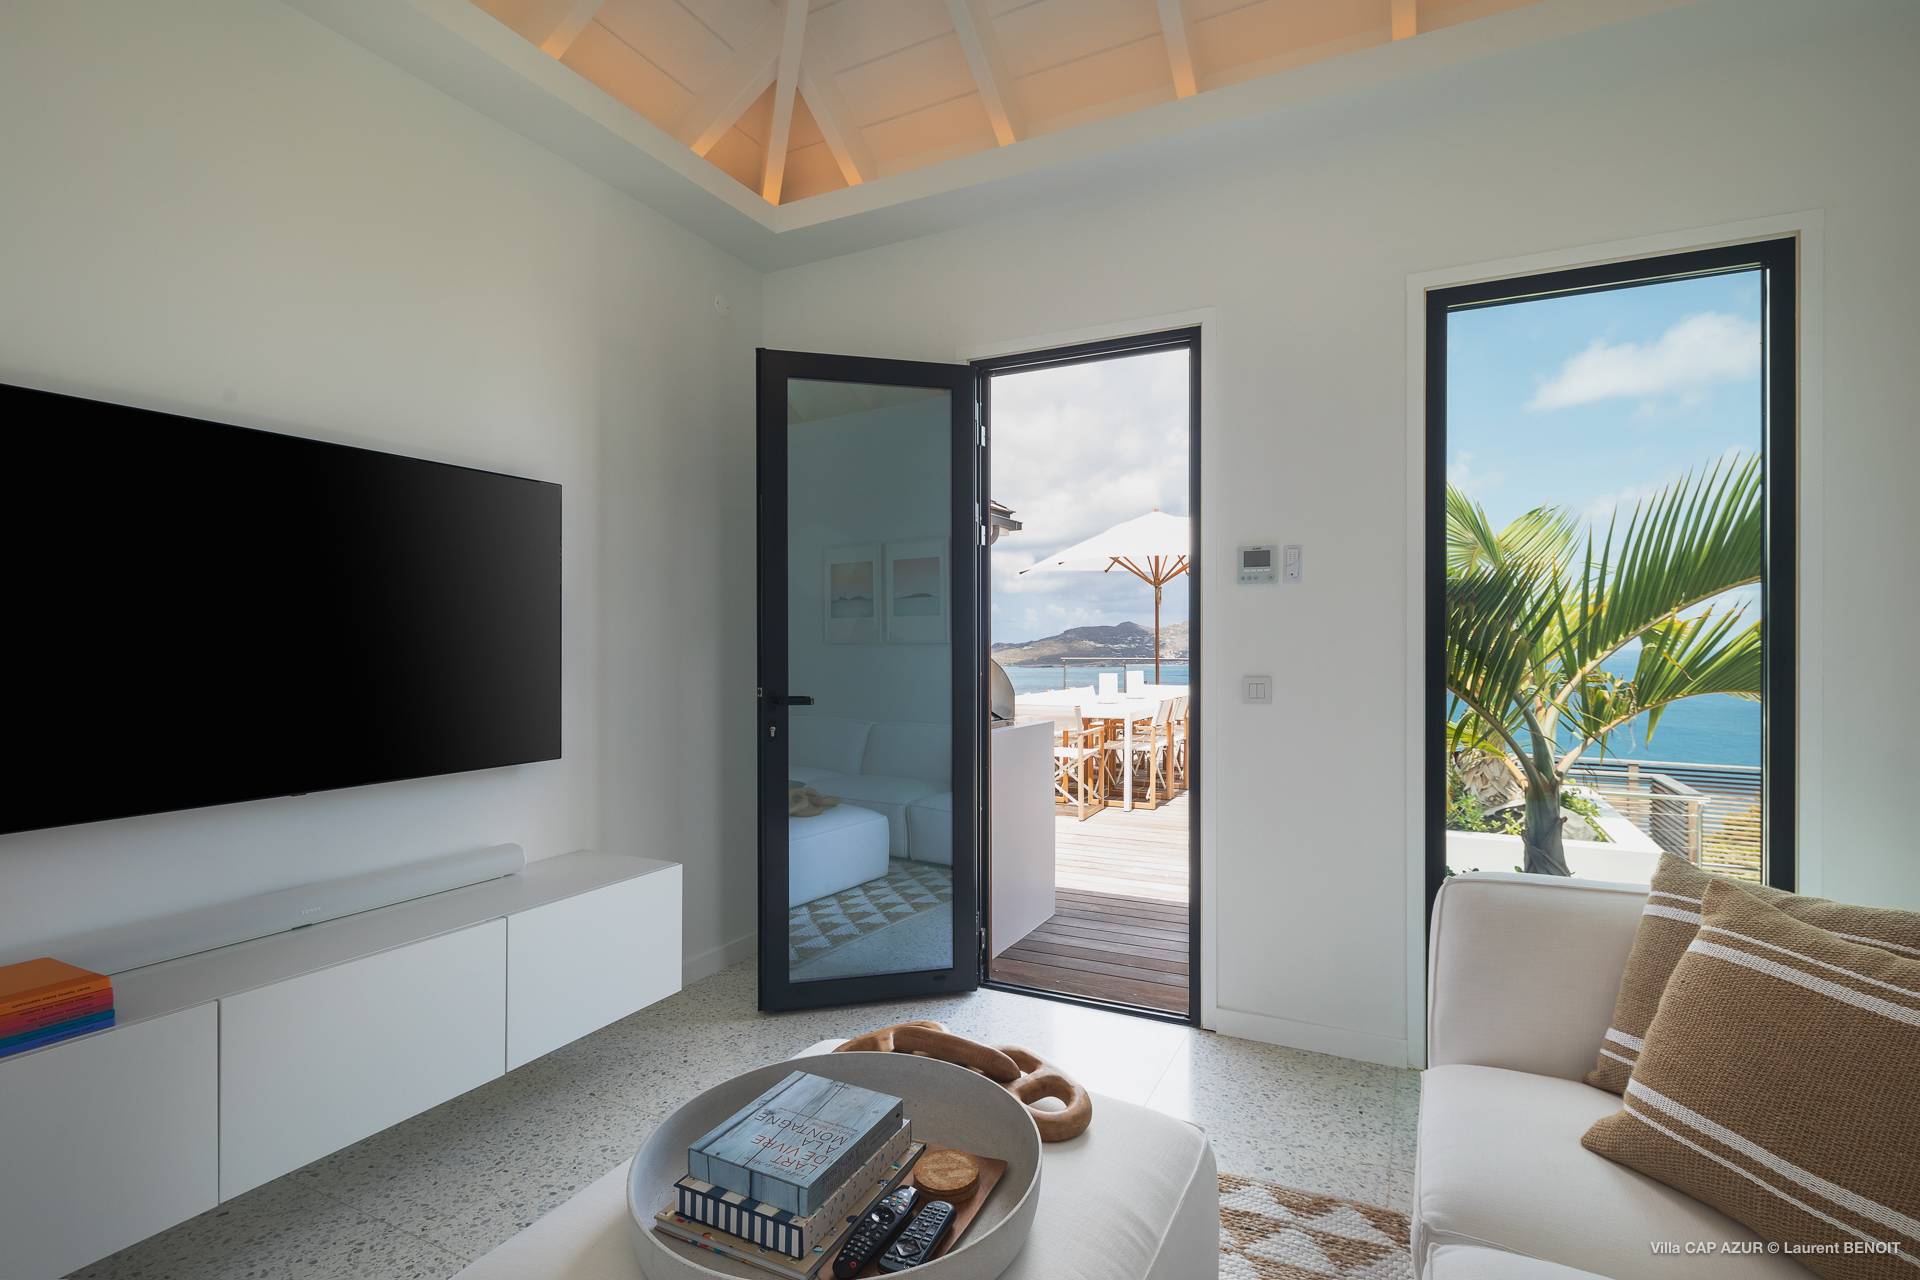 Villa Cap Azur TV Room